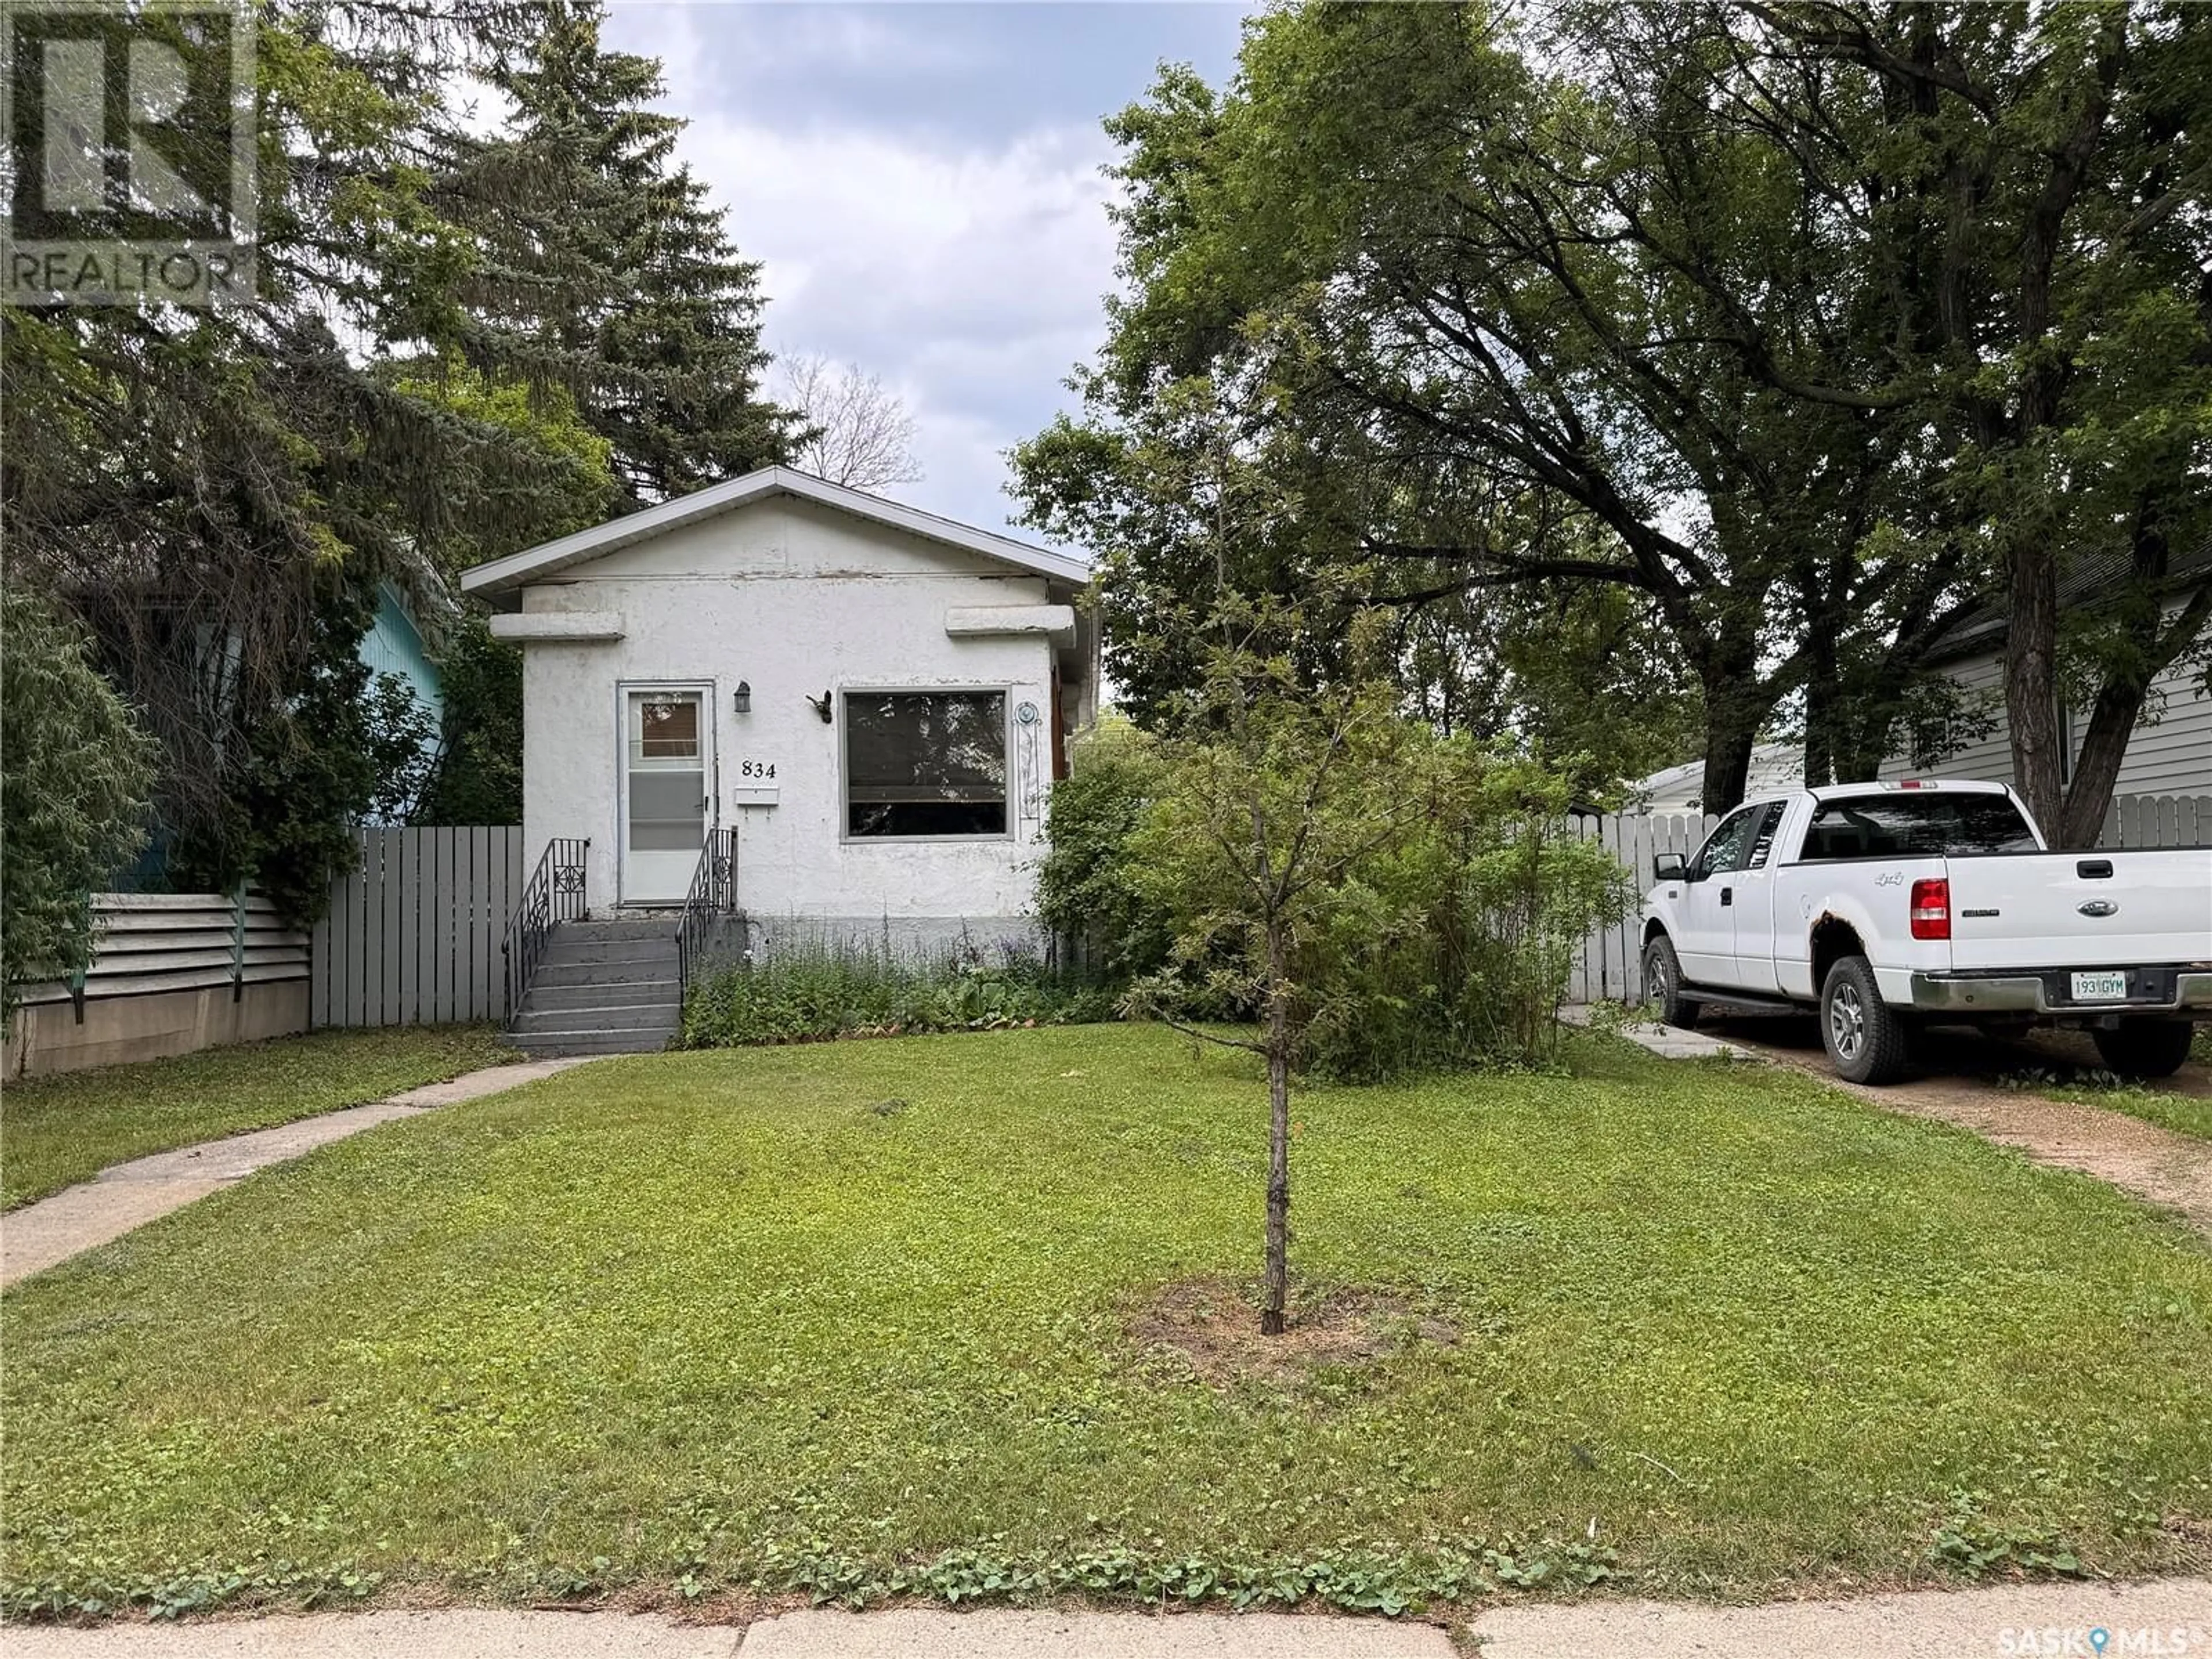 Frontside or backside of a home for 834 L AVENUE N, Saskatoon Saskatchewan S7L2R4